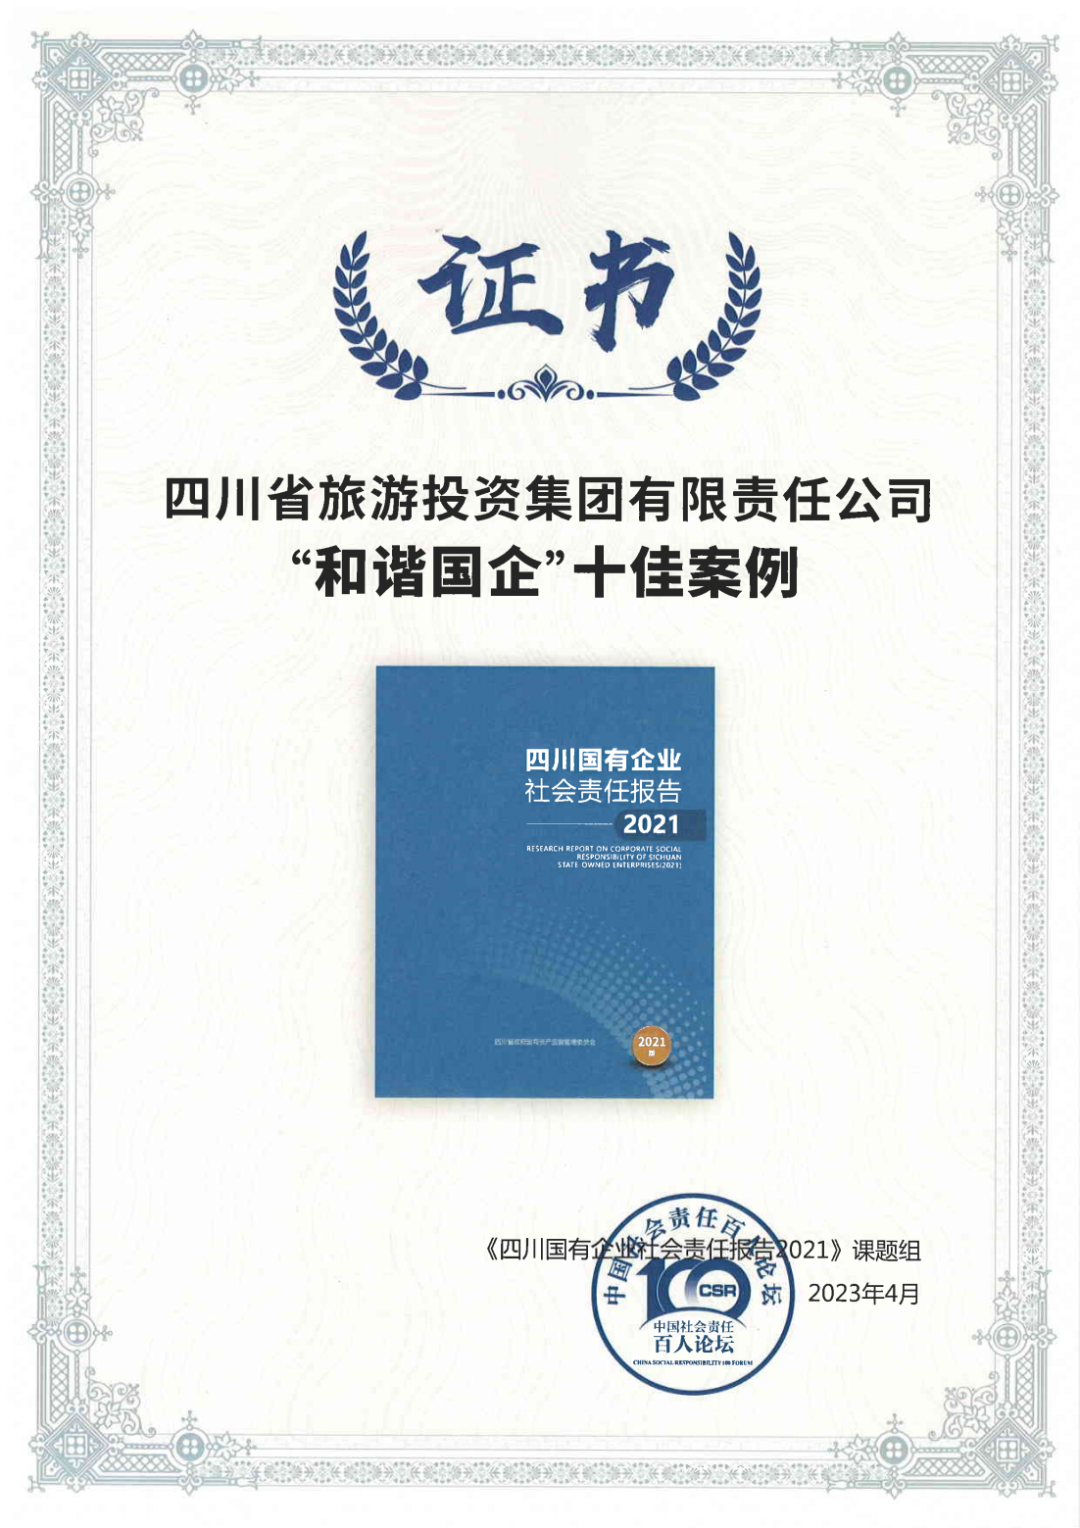 集团荣获《四川国有企业社会责任报告2021》“和谐国企”十佳案例